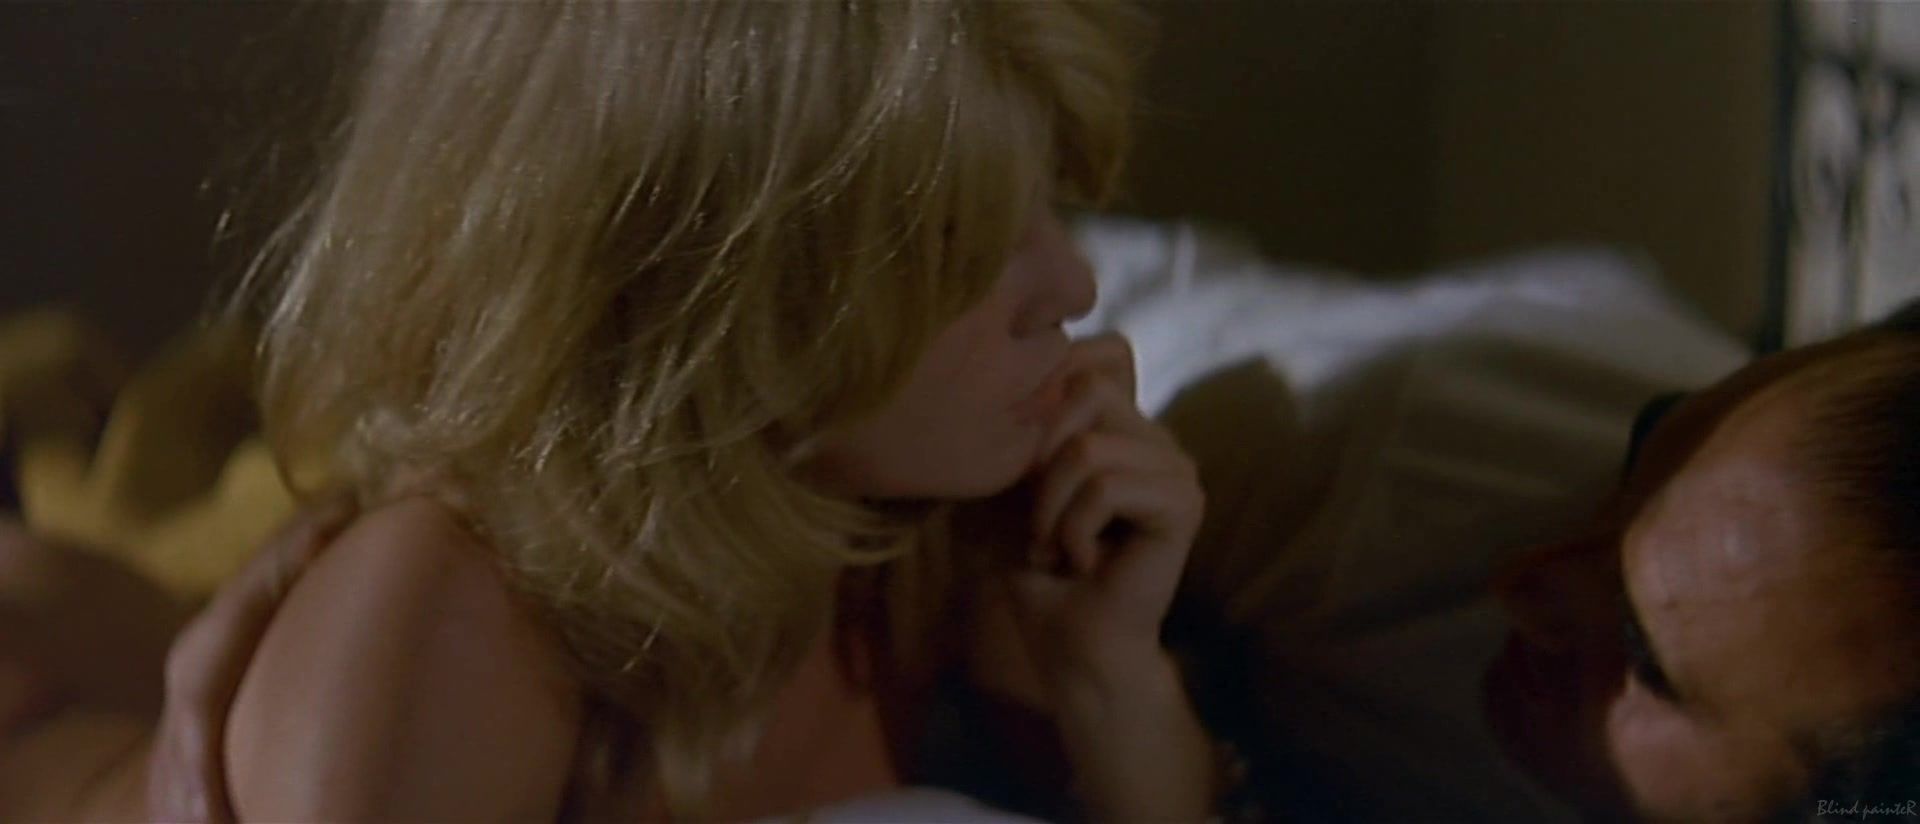 Toying Sex video Brigitte Bardot - Le Mepris (Contempt 1963) smplace - 1